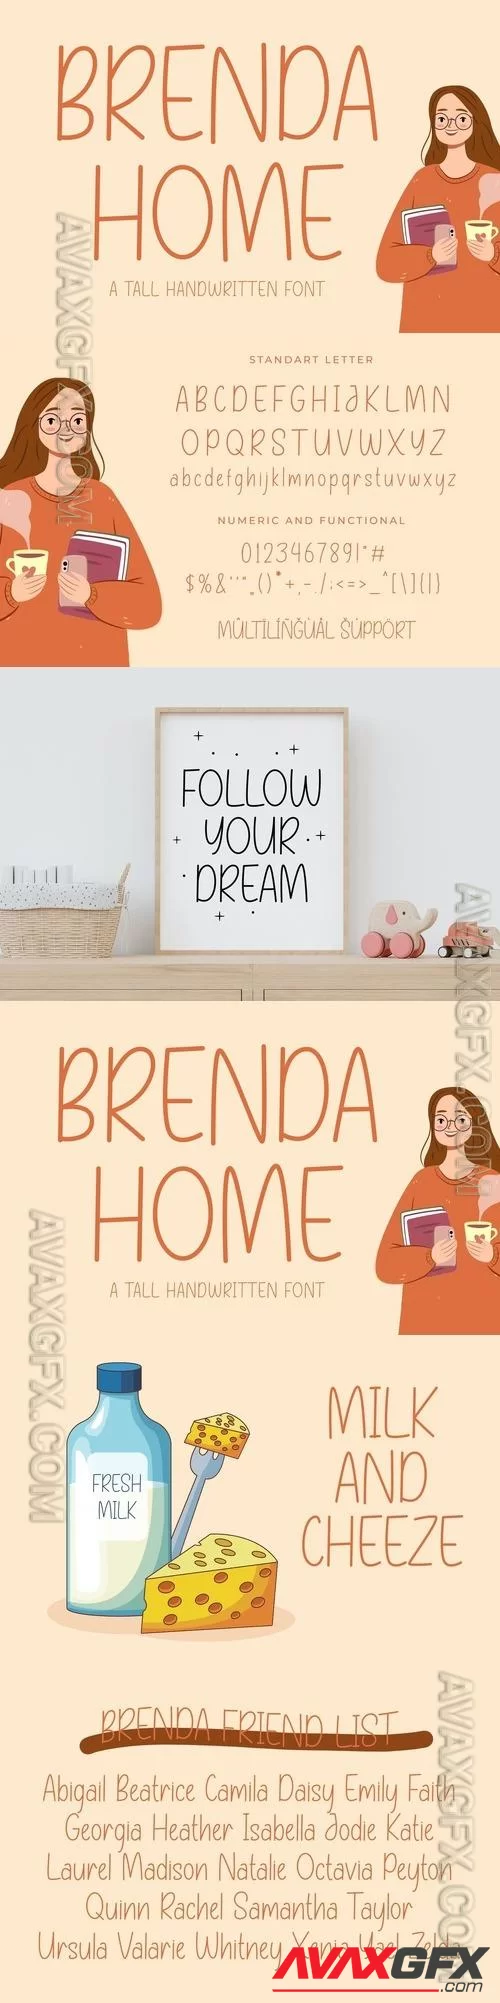 Brenda Home A Tall Handwritten font